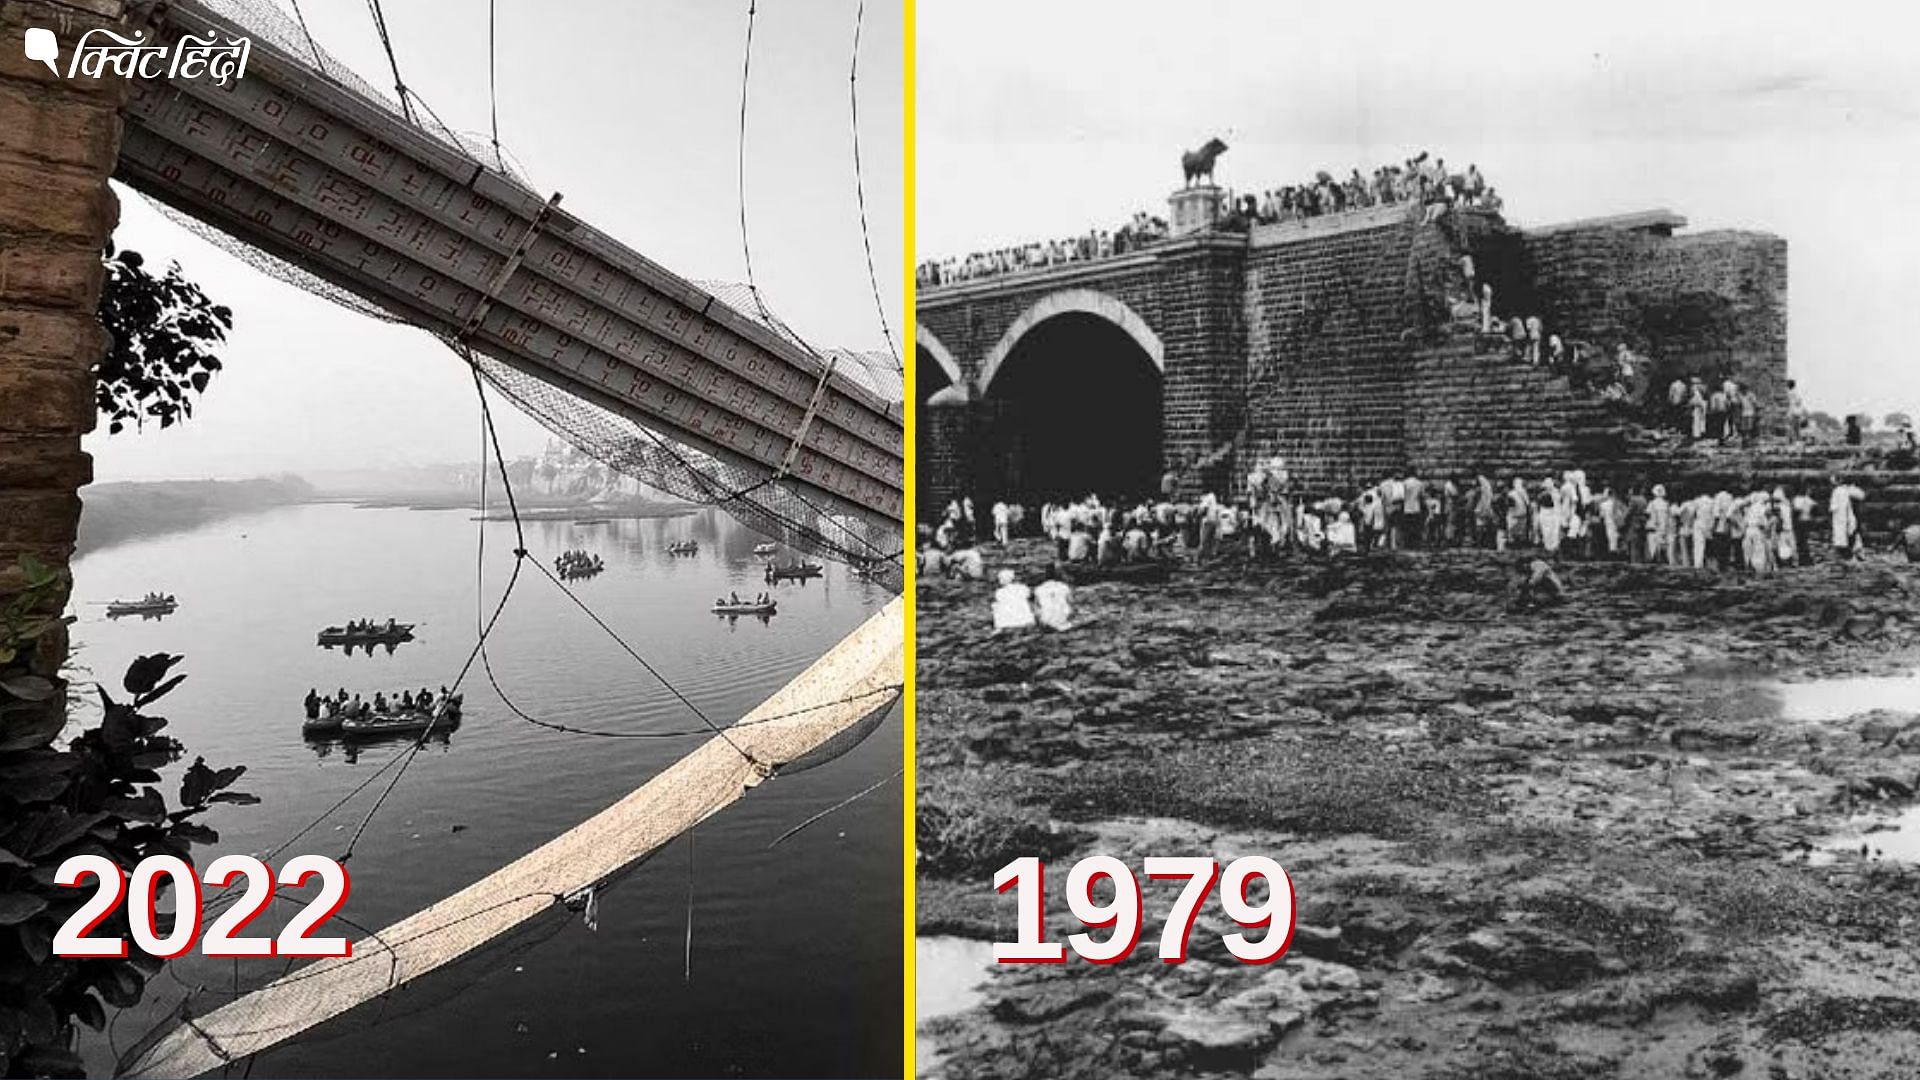 <div class="paragraphs"><p>Morbi Bridge Tragedy: मोरबी की त्रासदी जिसमें हुई थी 2000 लोगों की मौत</p></div>